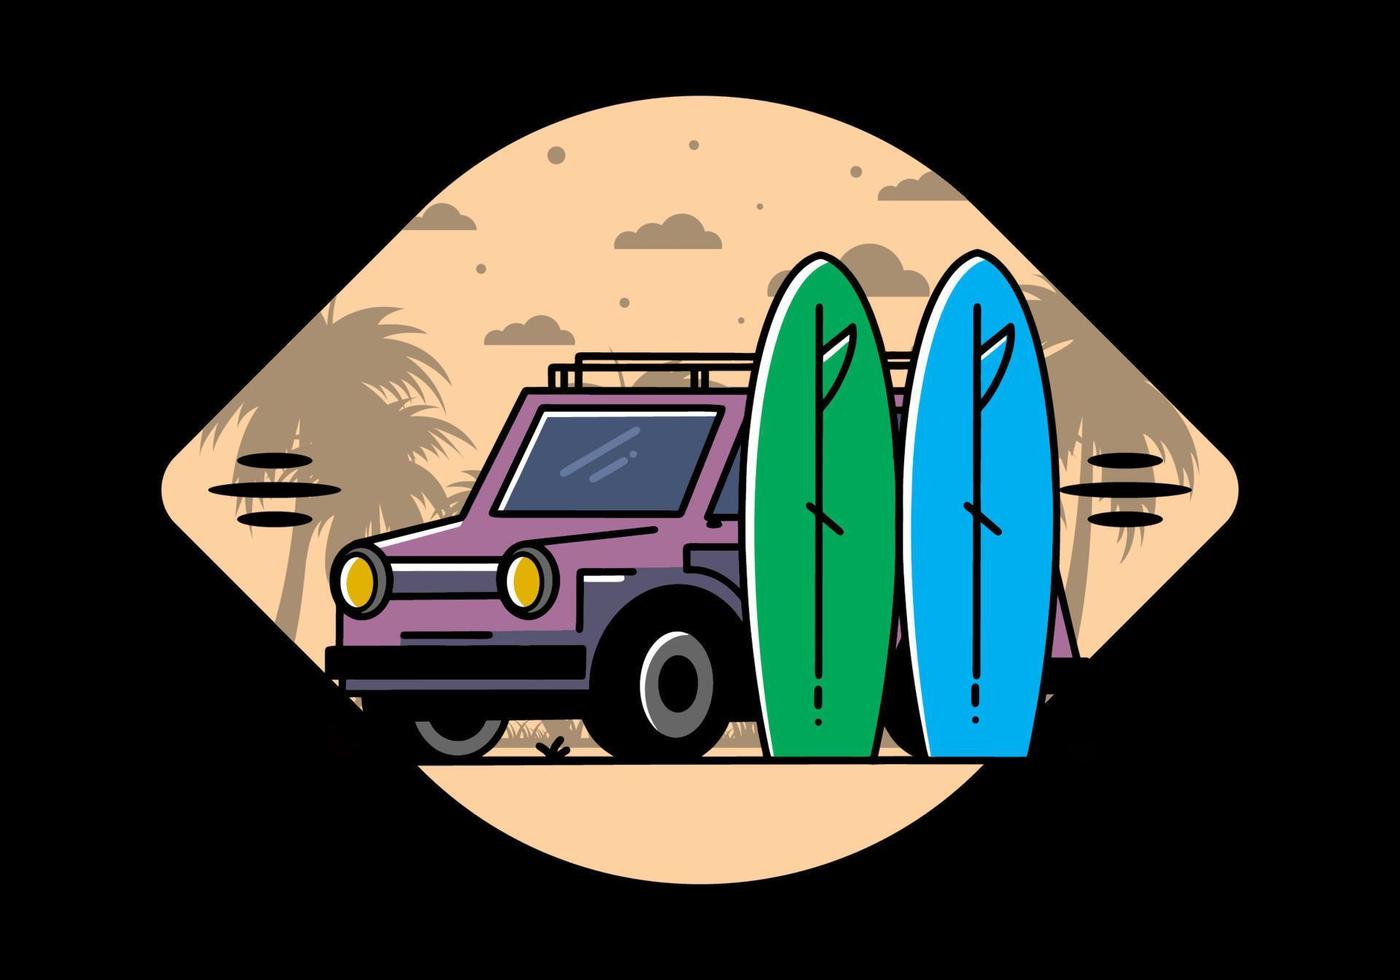 kleine auto en twee surfplanken illustratie vector